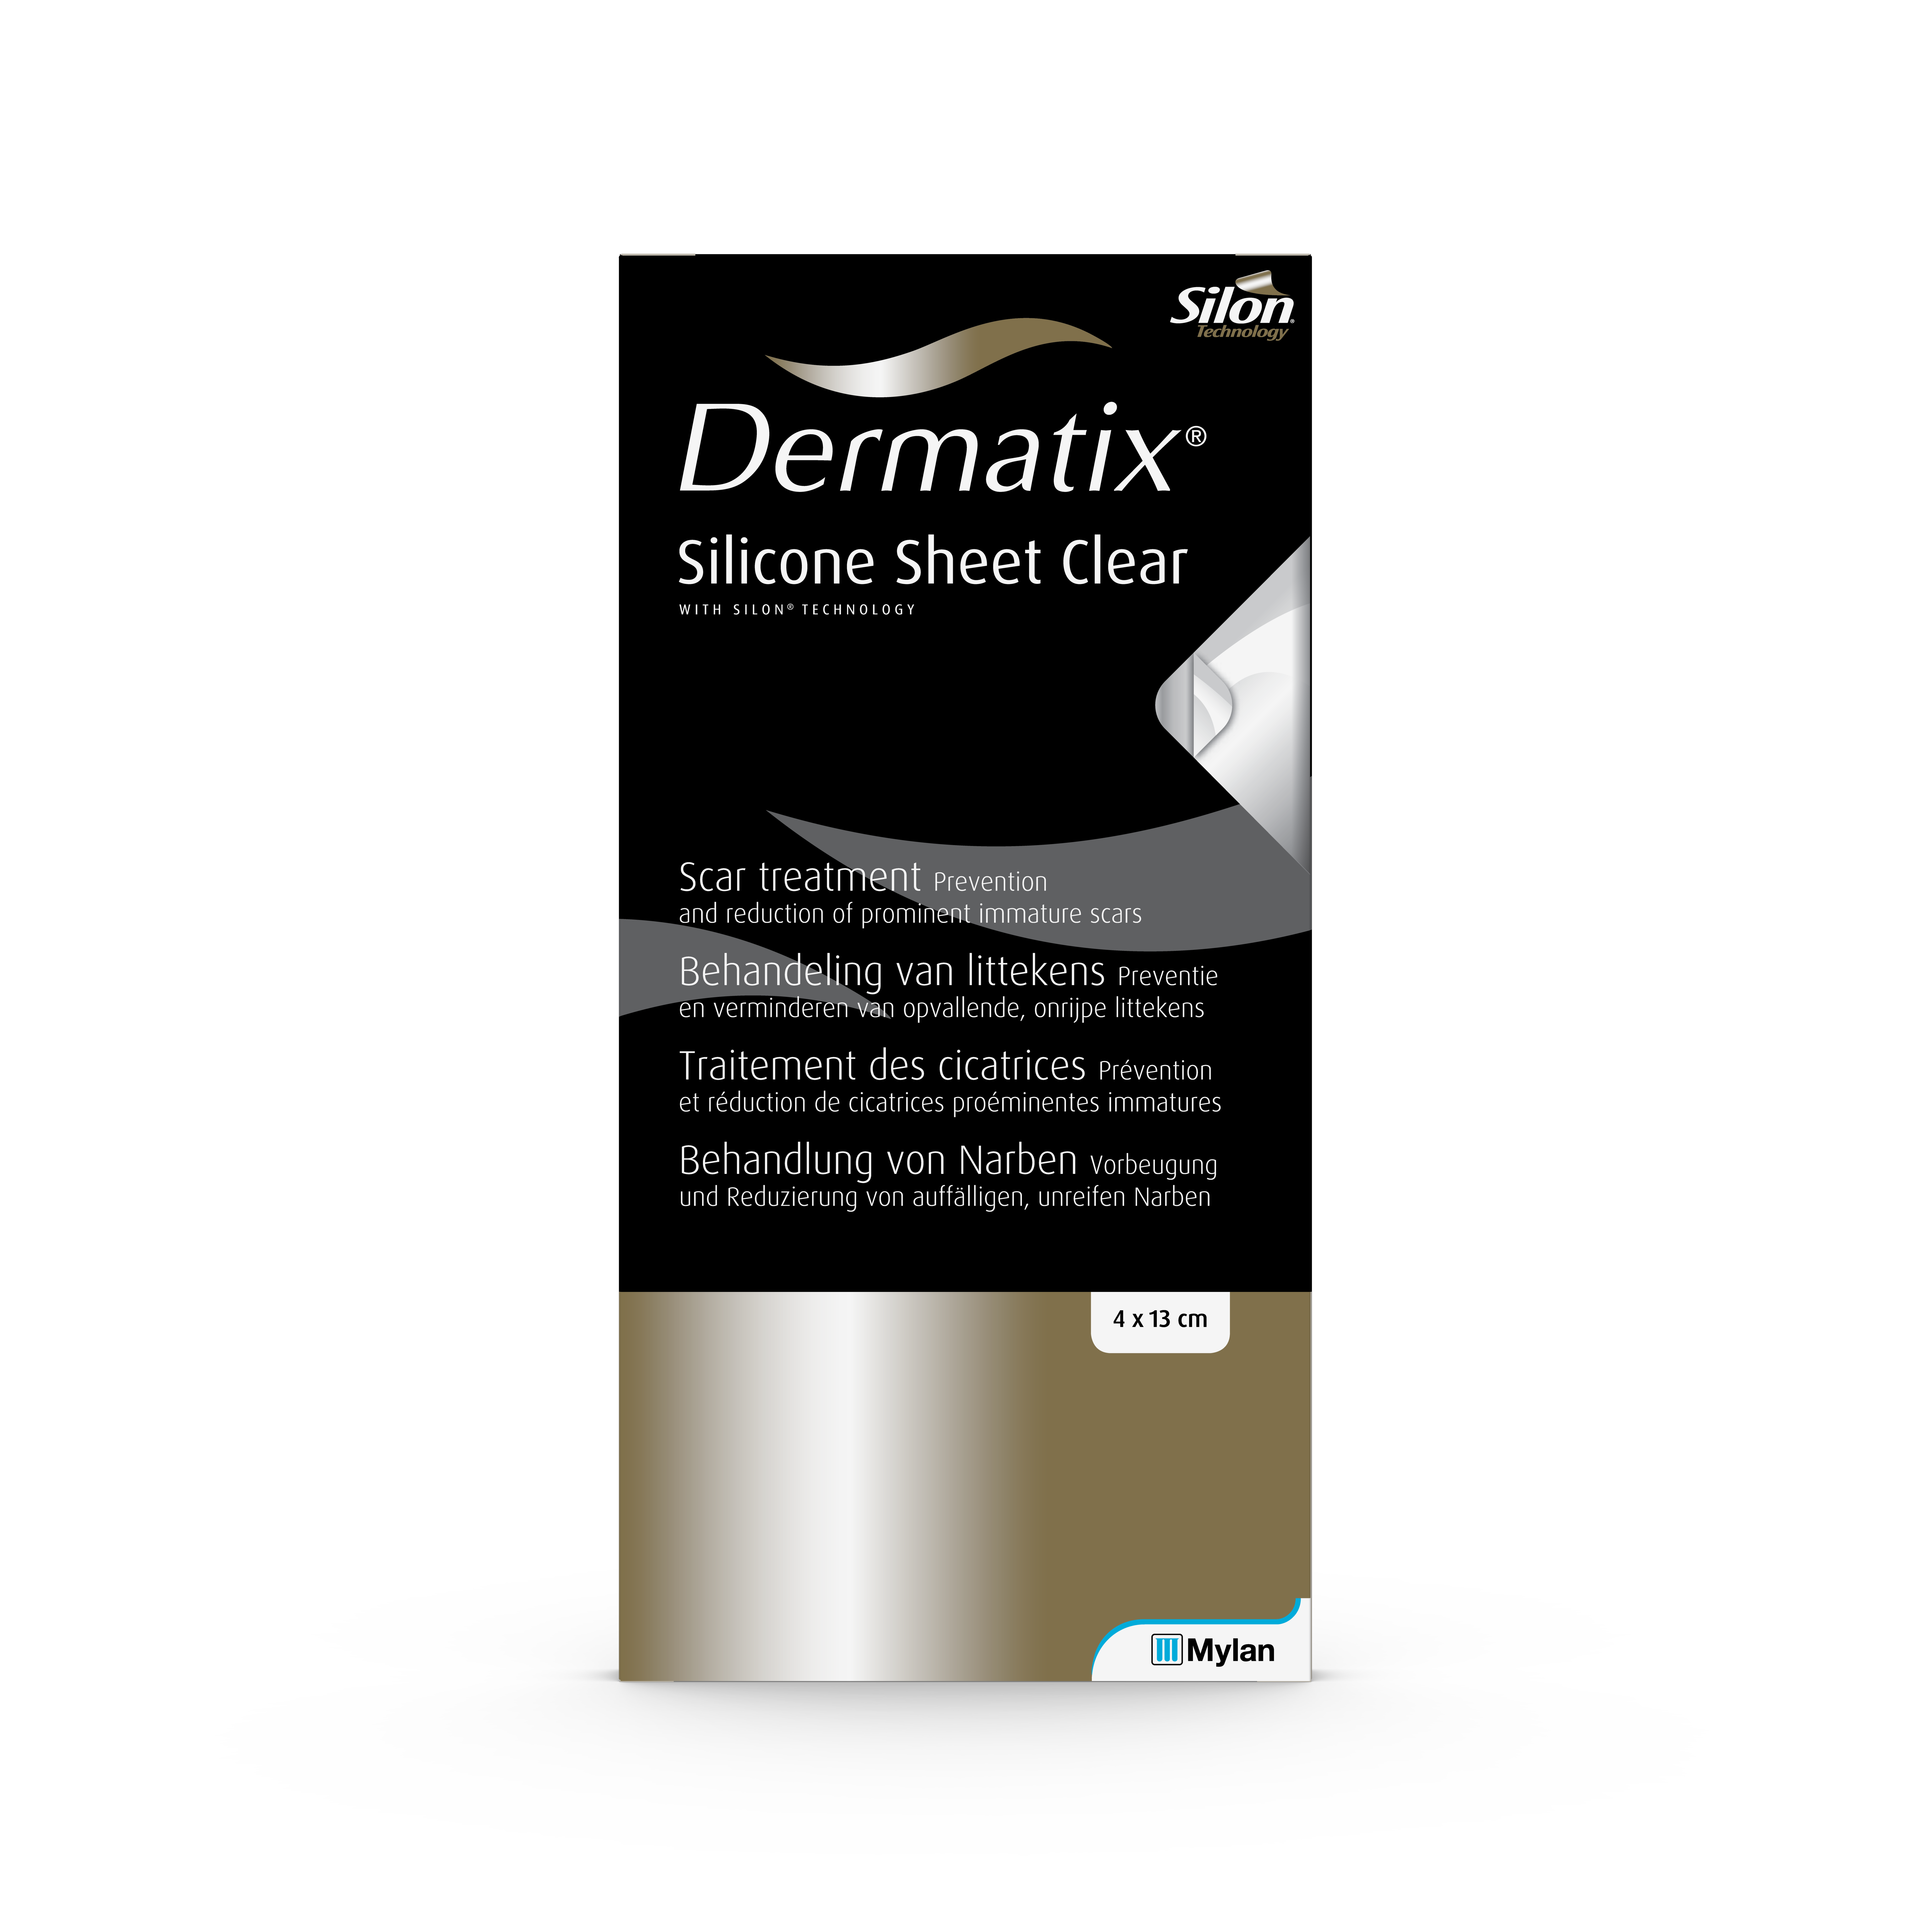 Dermatix